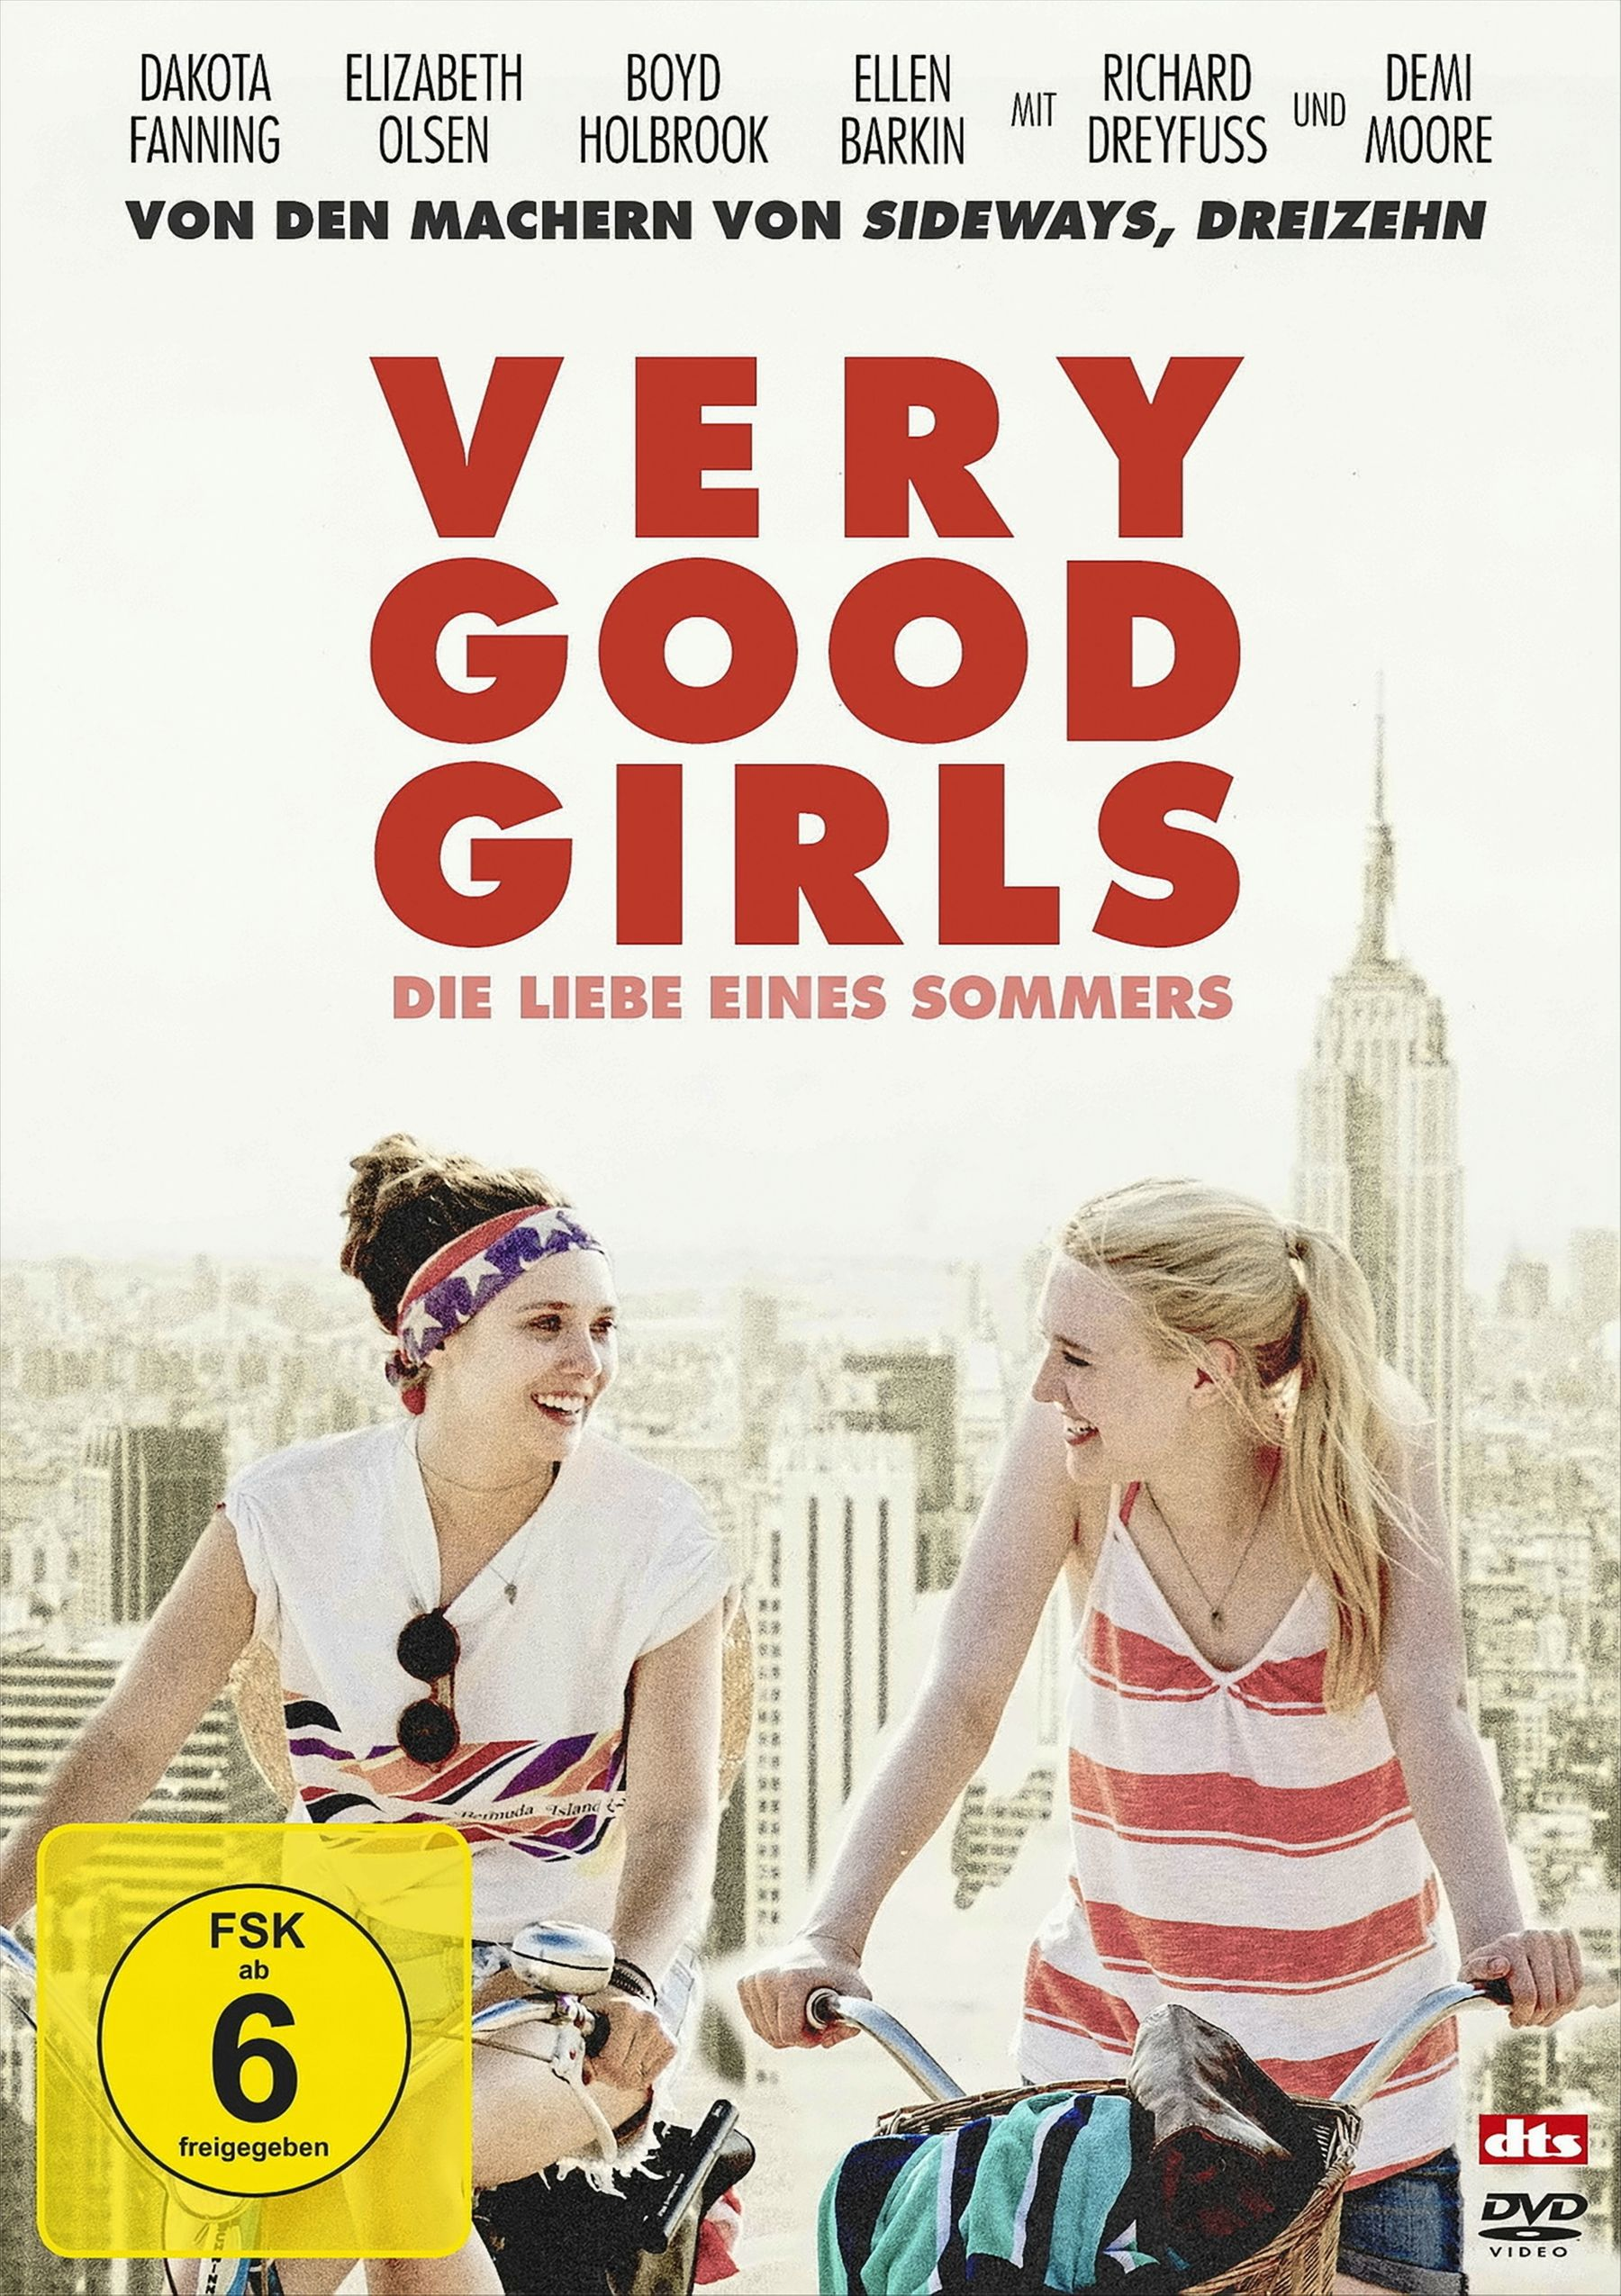 Sommers Liebe DVD - Good Very Die eines Girls